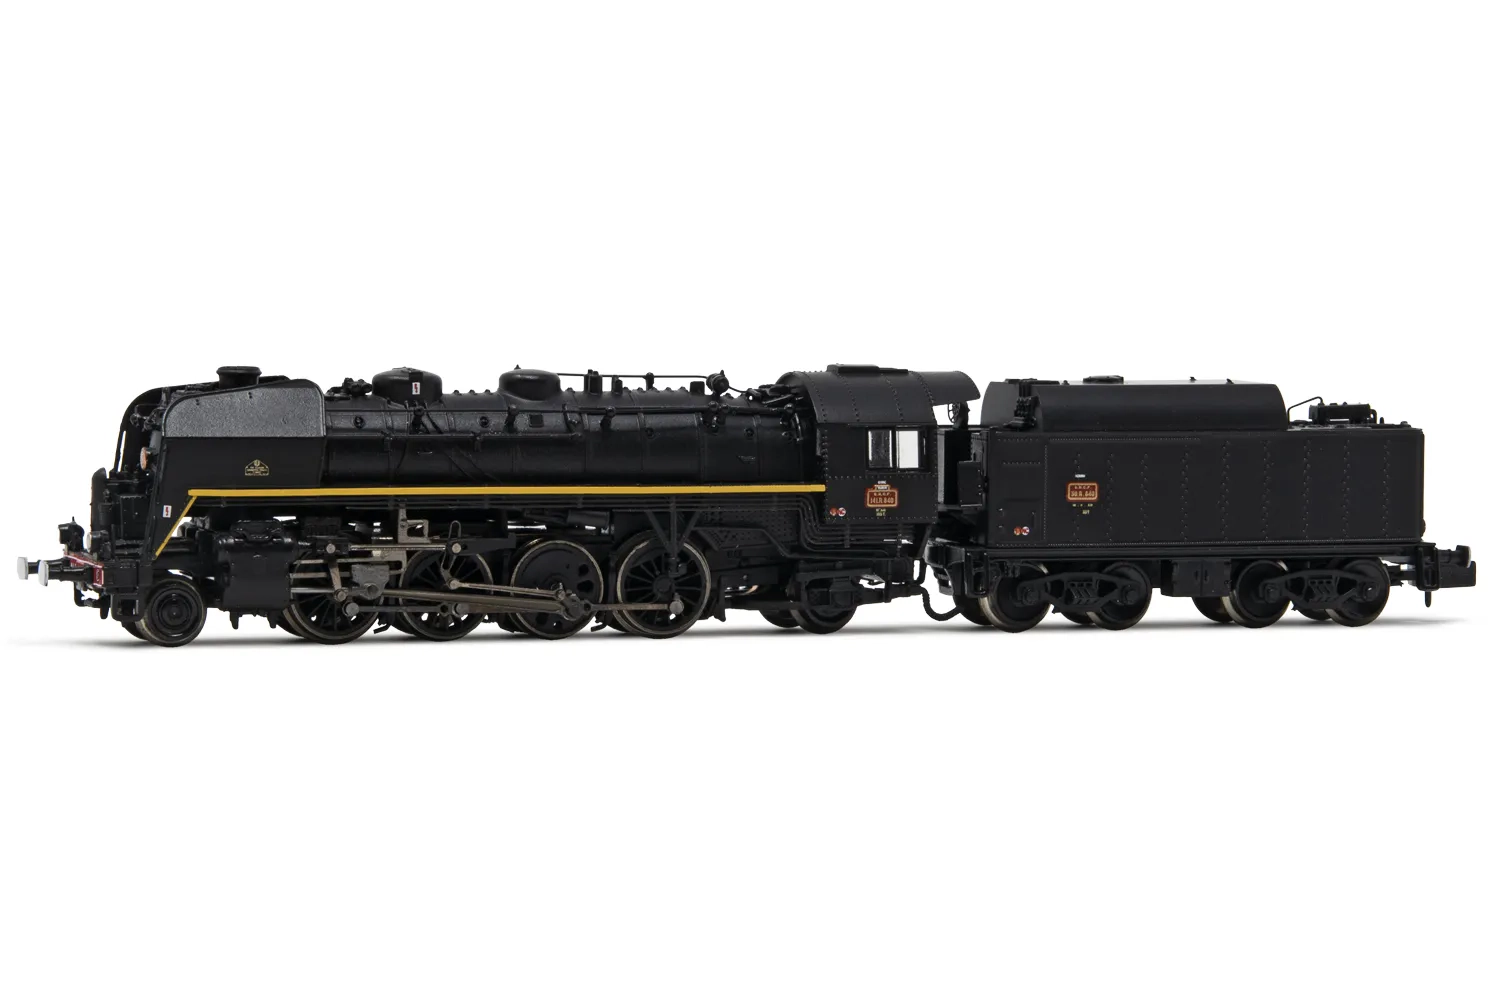 SNCF, Dampflokomotive 141 R 840, mit BoxpokRädern auf der Treibachse, Tender mit großem Ölbunker, in schwarzer Lackierung mit gelber Linie, Ep. III, mit DCC-Sounddecoder